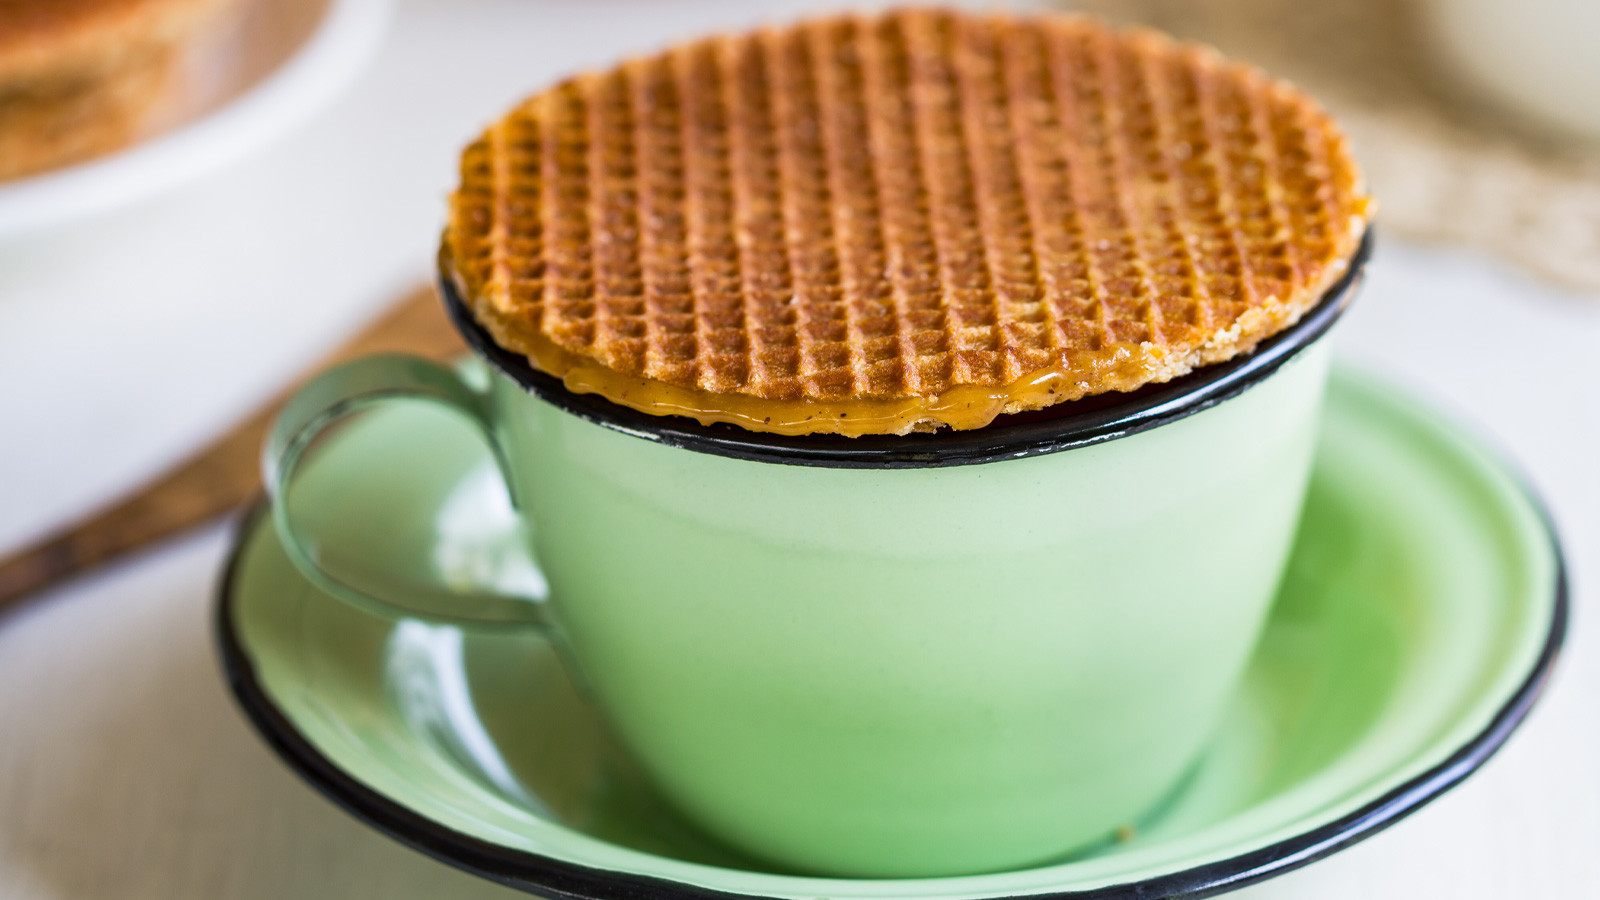 Evinizde de kolay bir şekilde hazırlayabileceğiniz karamelli Hollanda waffle'ı 10-12 dakika içerisinde hazır oluyor.